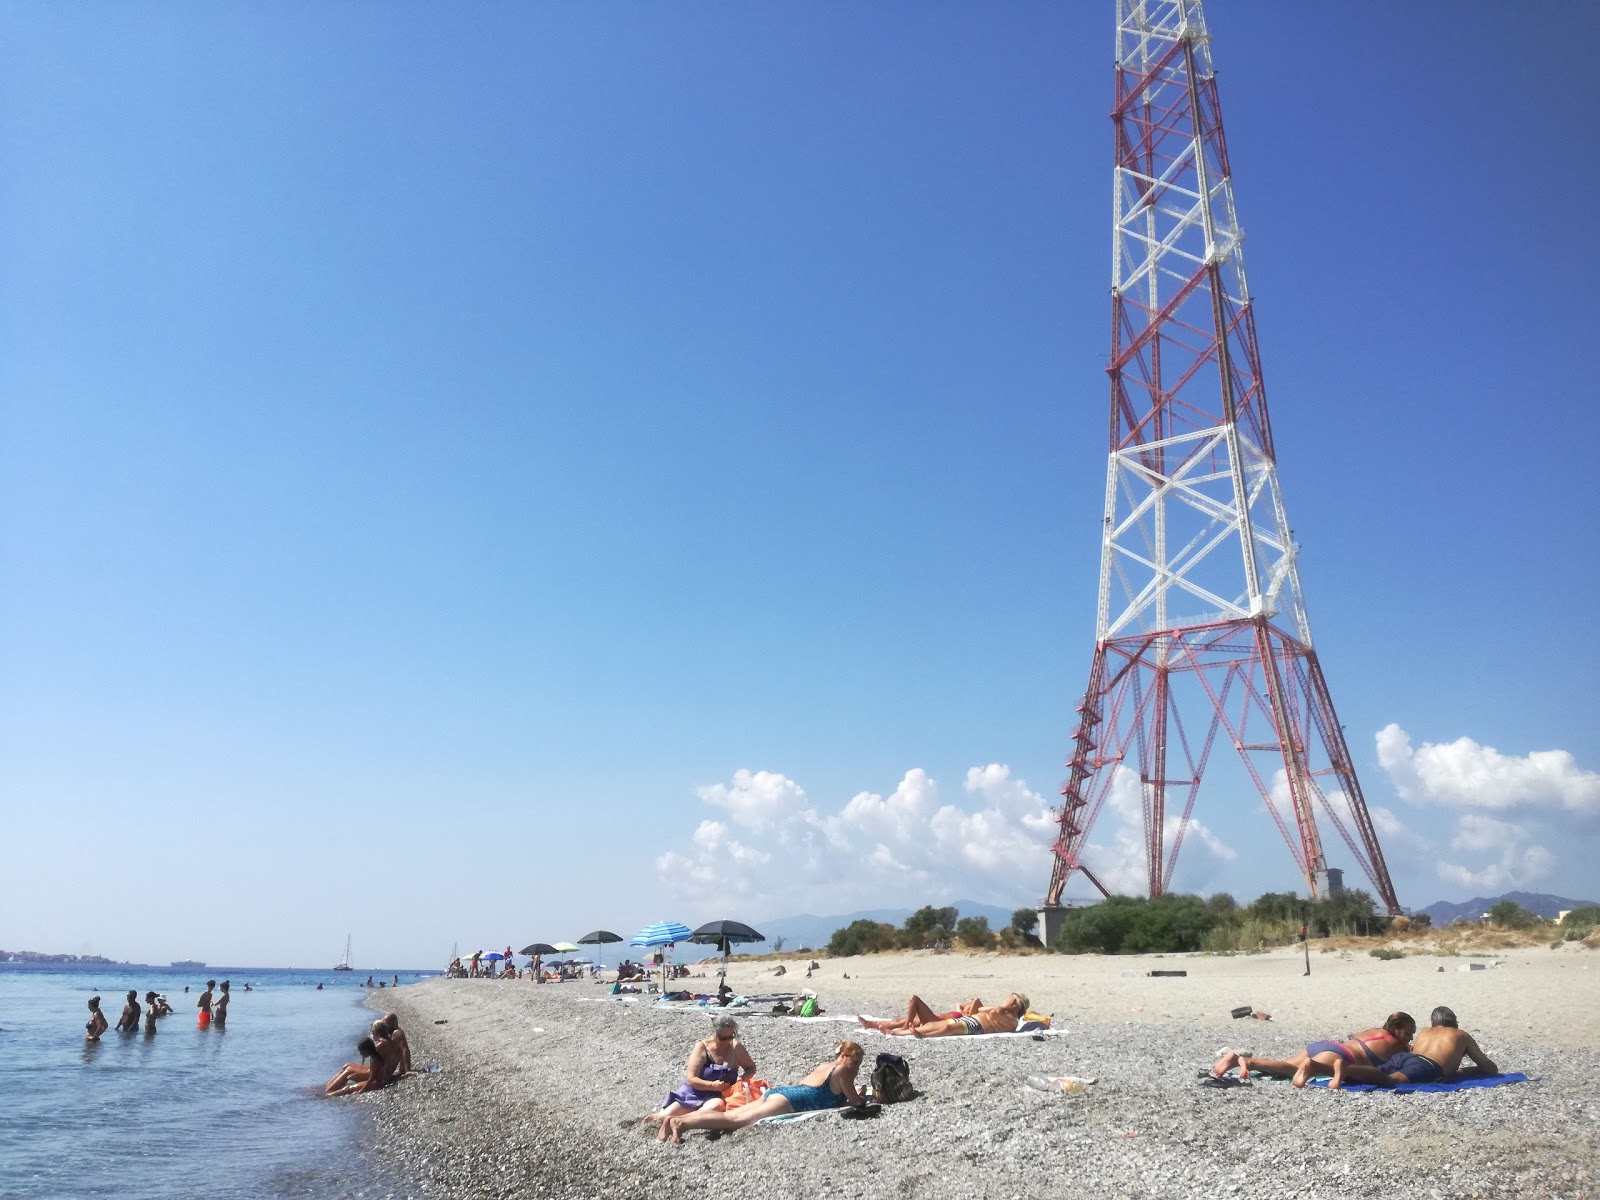 Capo Peloro beach'in fotoğrafı geniş plaj ile birlikte